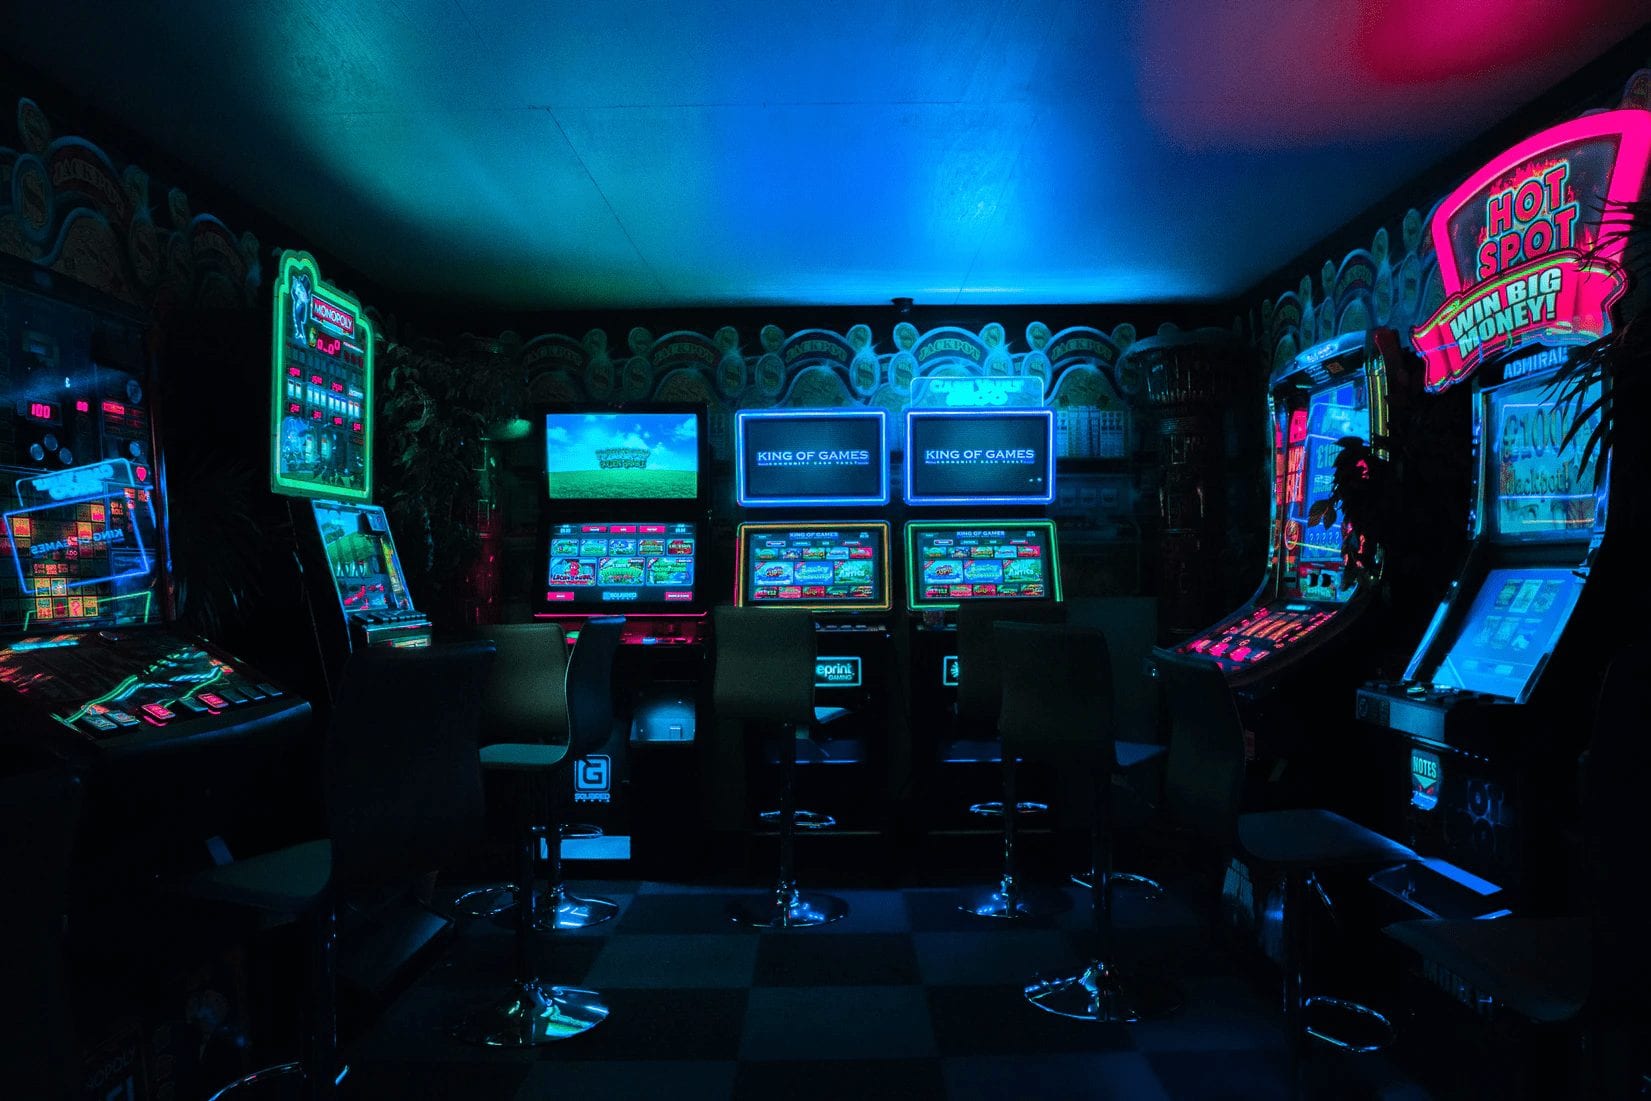 Interior of an Arcade